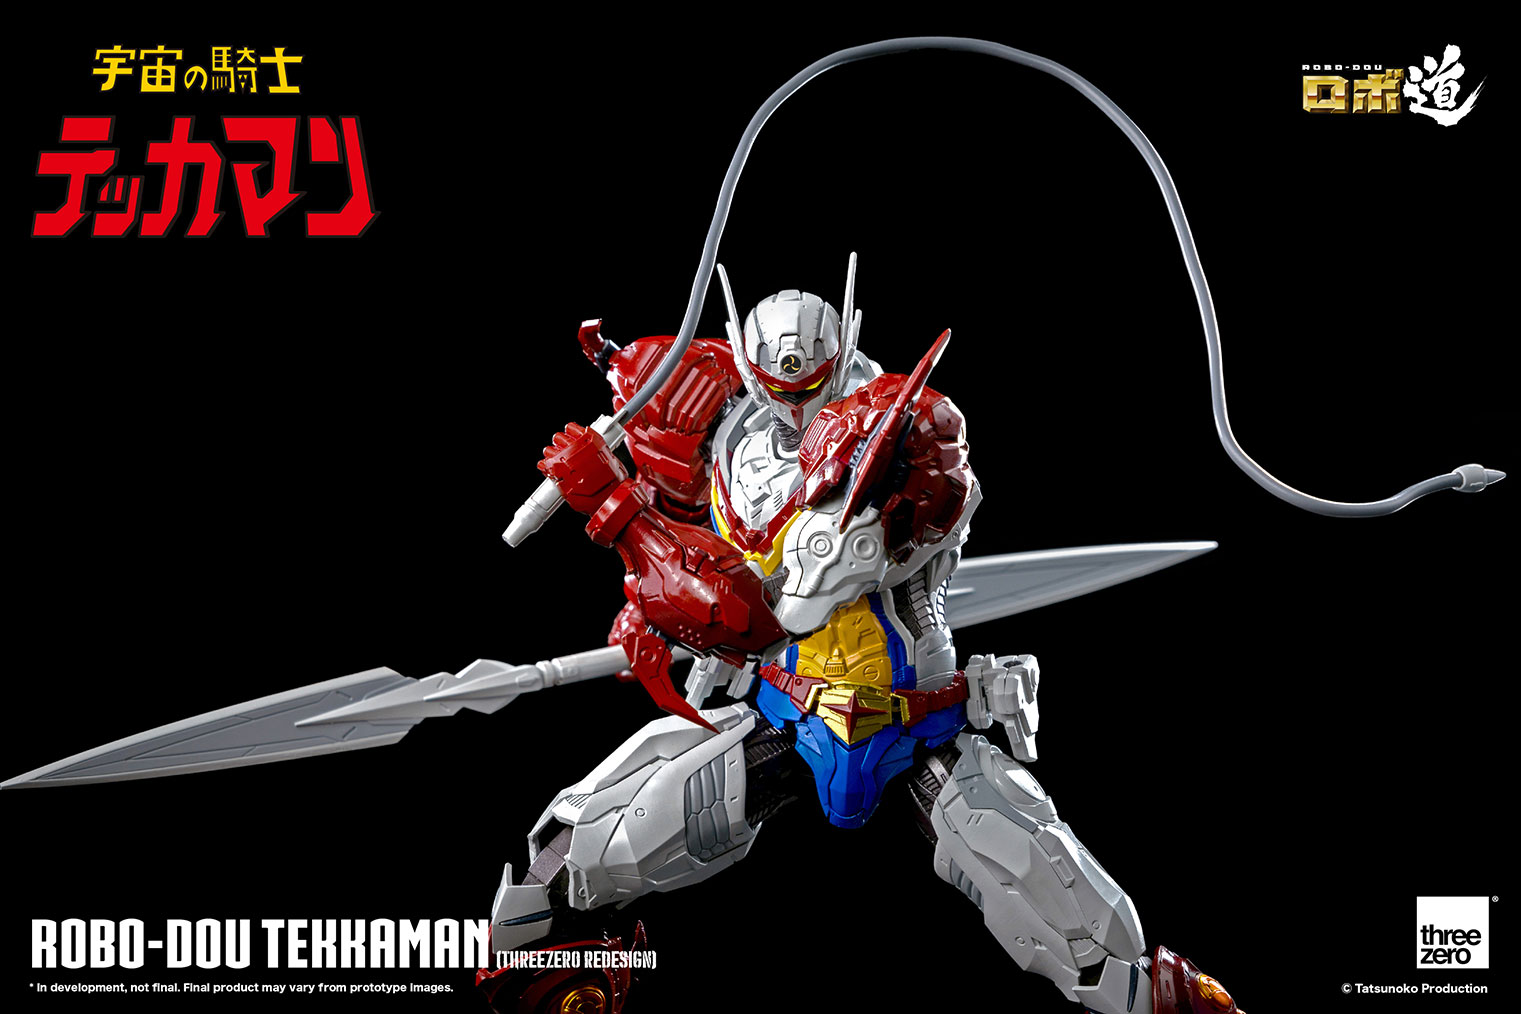 threezero - ROBO-DOU - Tekkaman: The Space Knight - Tekkaman (threezero Redesign) - Marvelous Toys